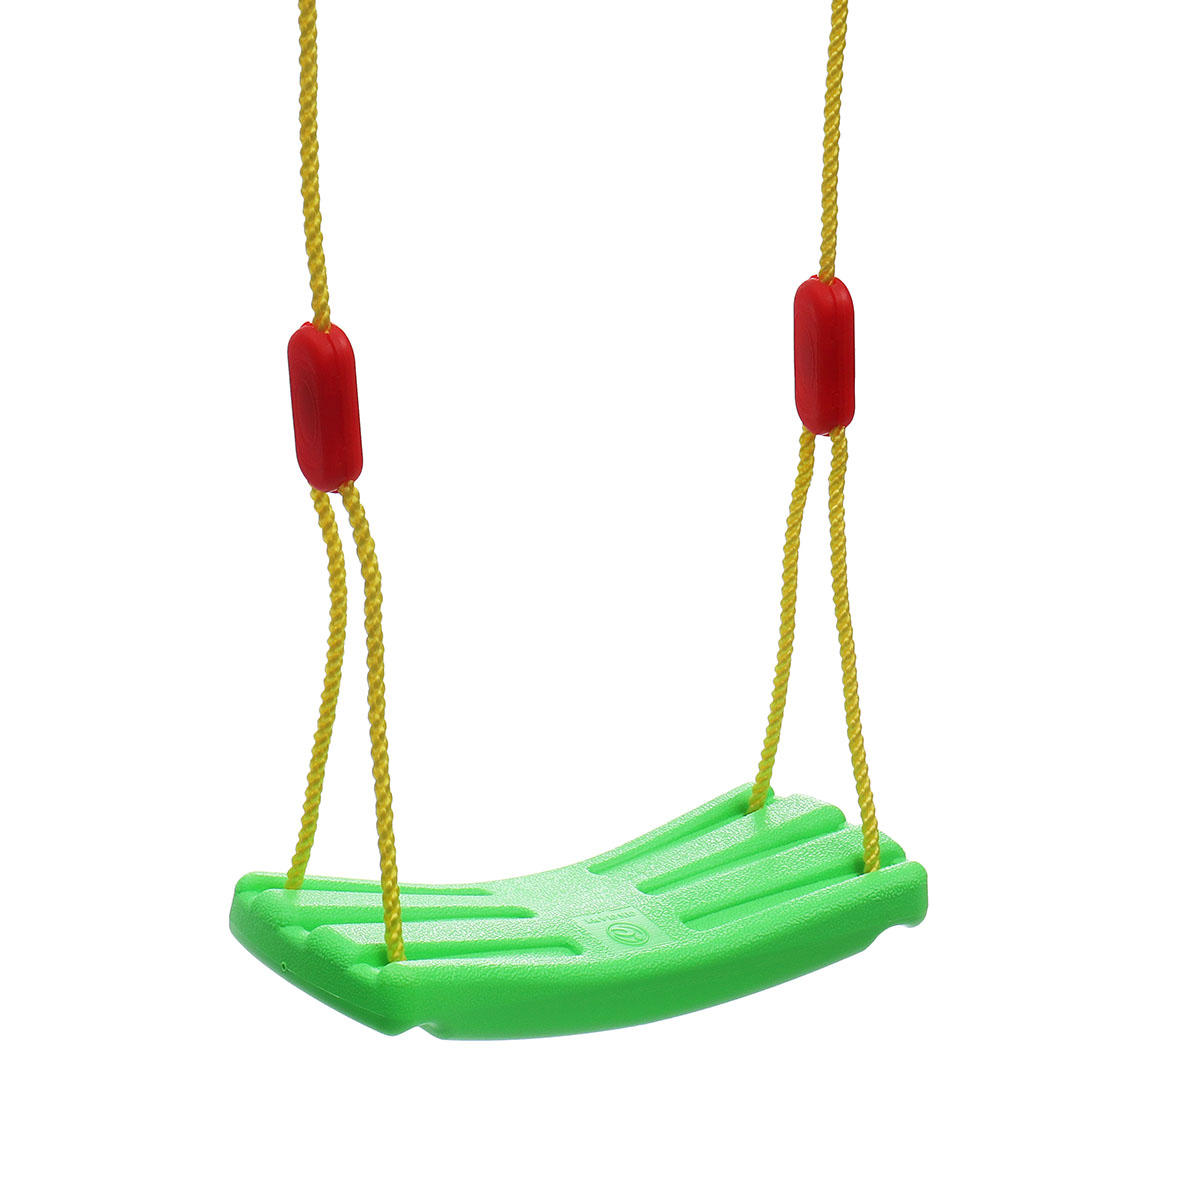 Crianças Balanço Assento Crianças Brinquedo Divertido Ao Ar Livre Jardim Hammock Ajustável Corda Cadeira De Suspensão